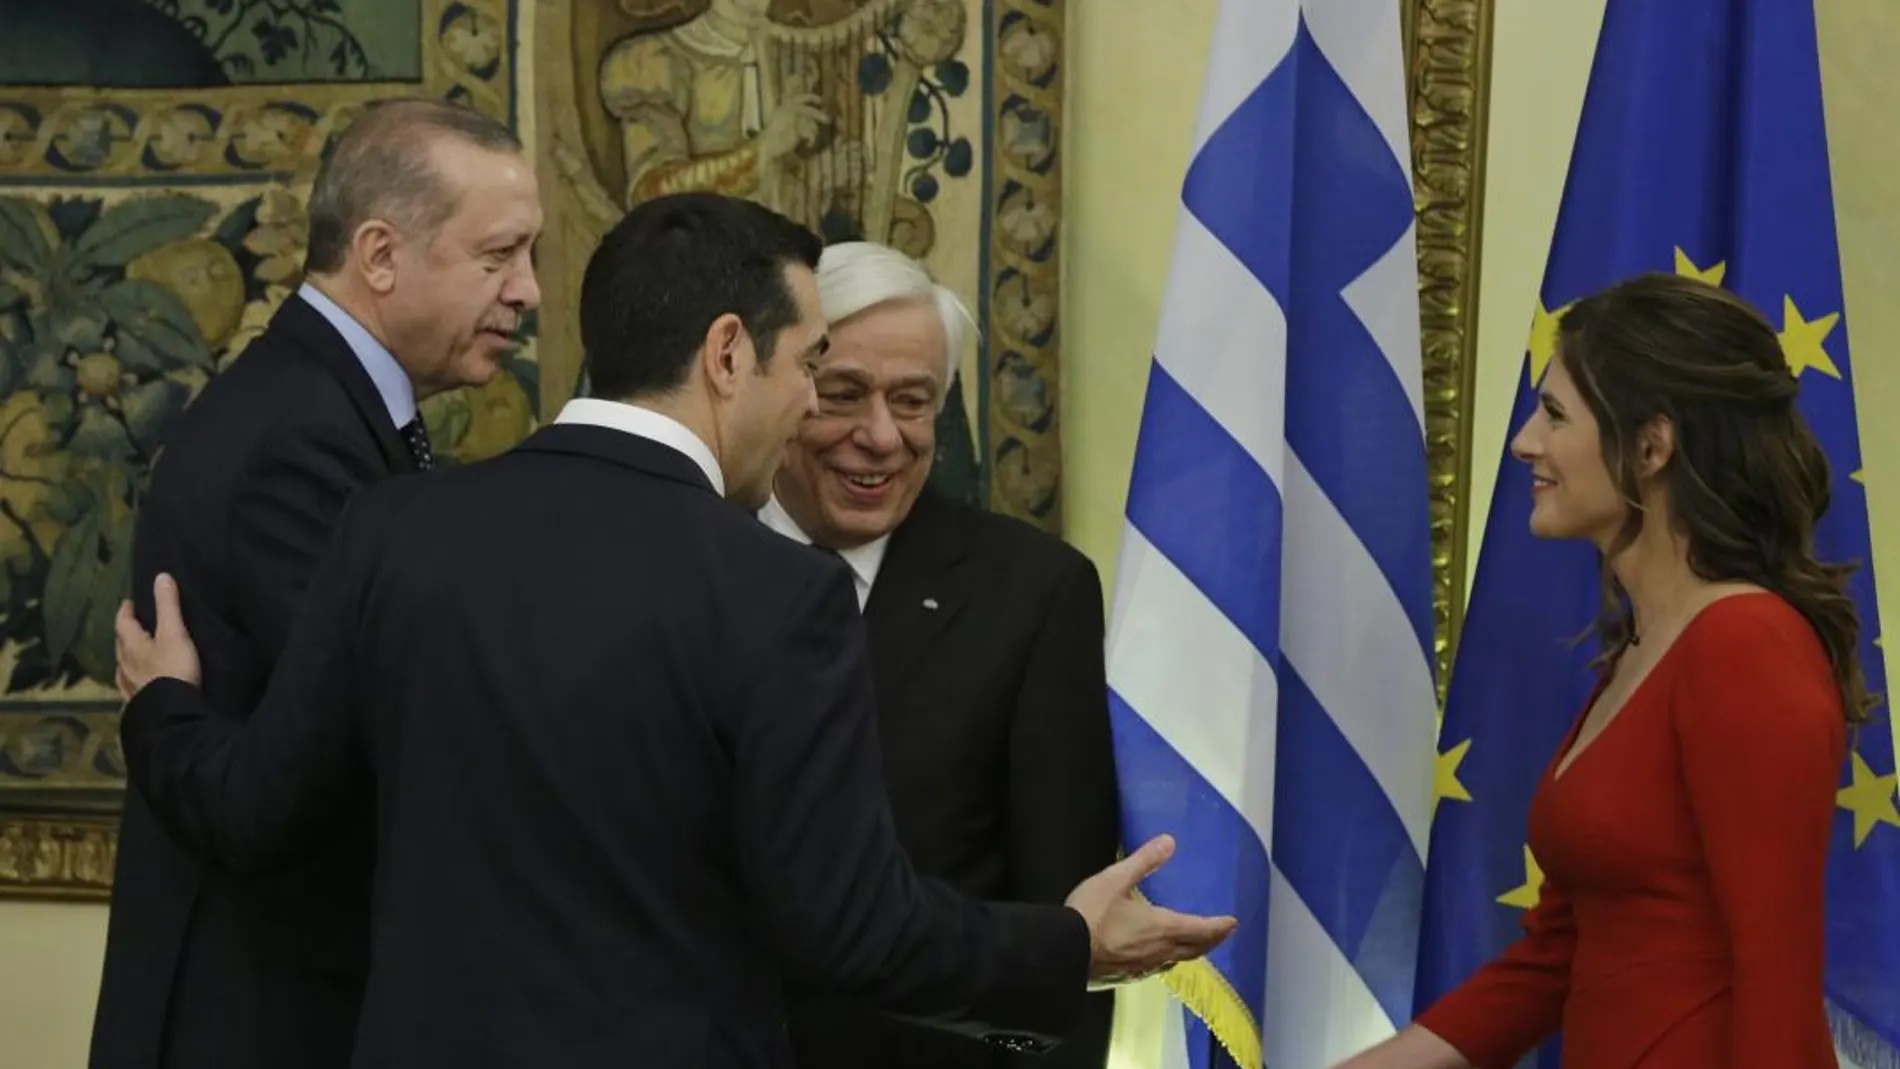 La visita de Erdogan a Grecia saca a relucir rencillas históricas